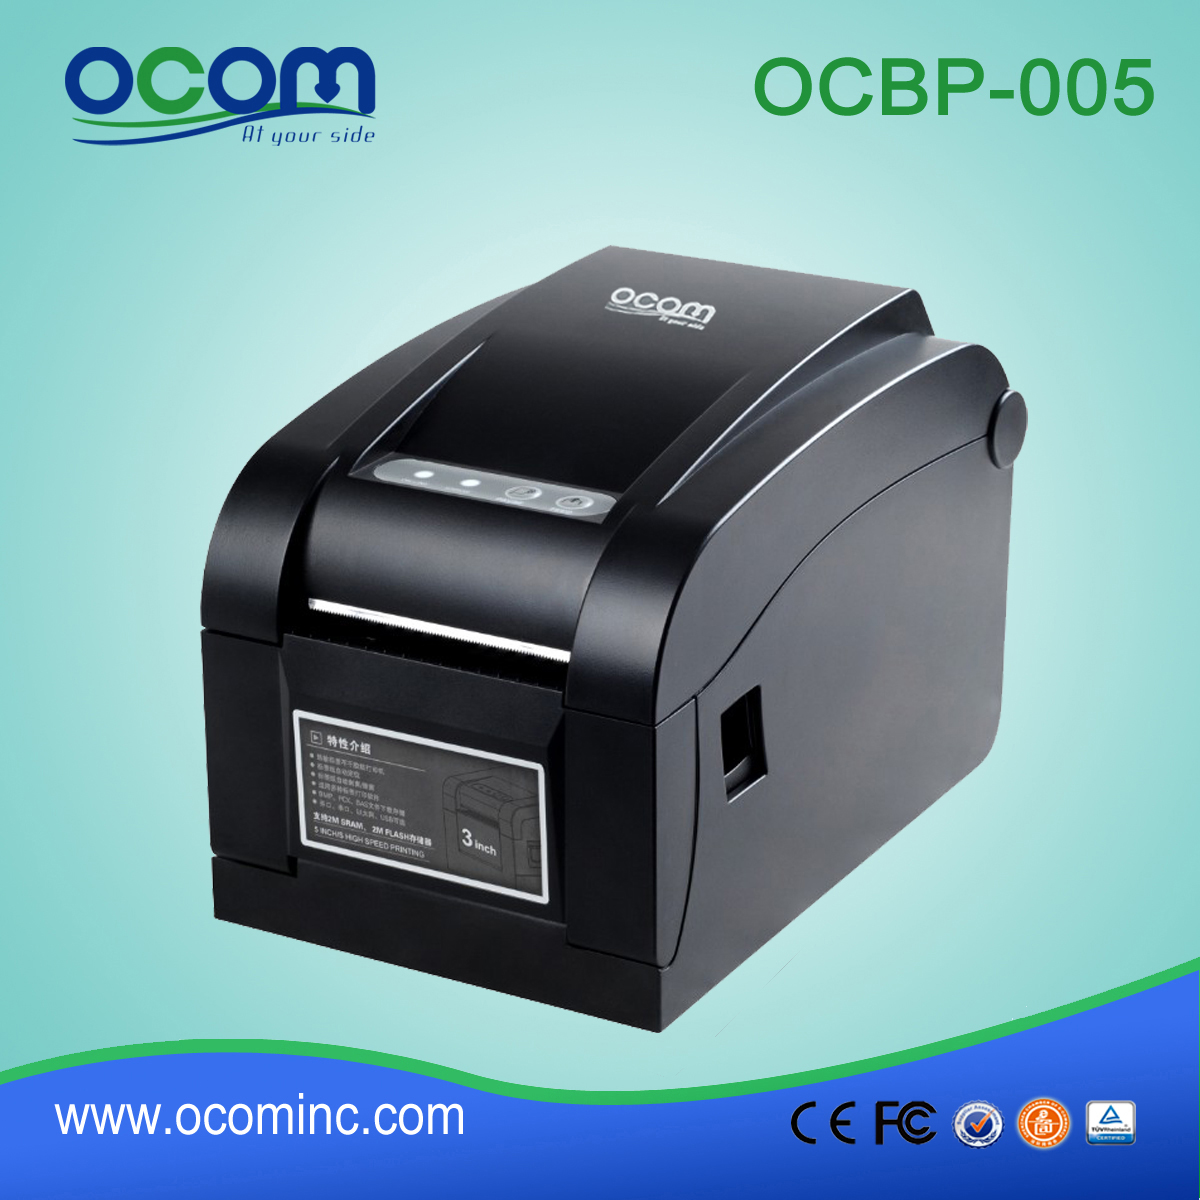 OCBP -005-URL 3 بوصة عرض ورقة الحرارية الباركود تسمية الطابعة مع انزع وظيفة